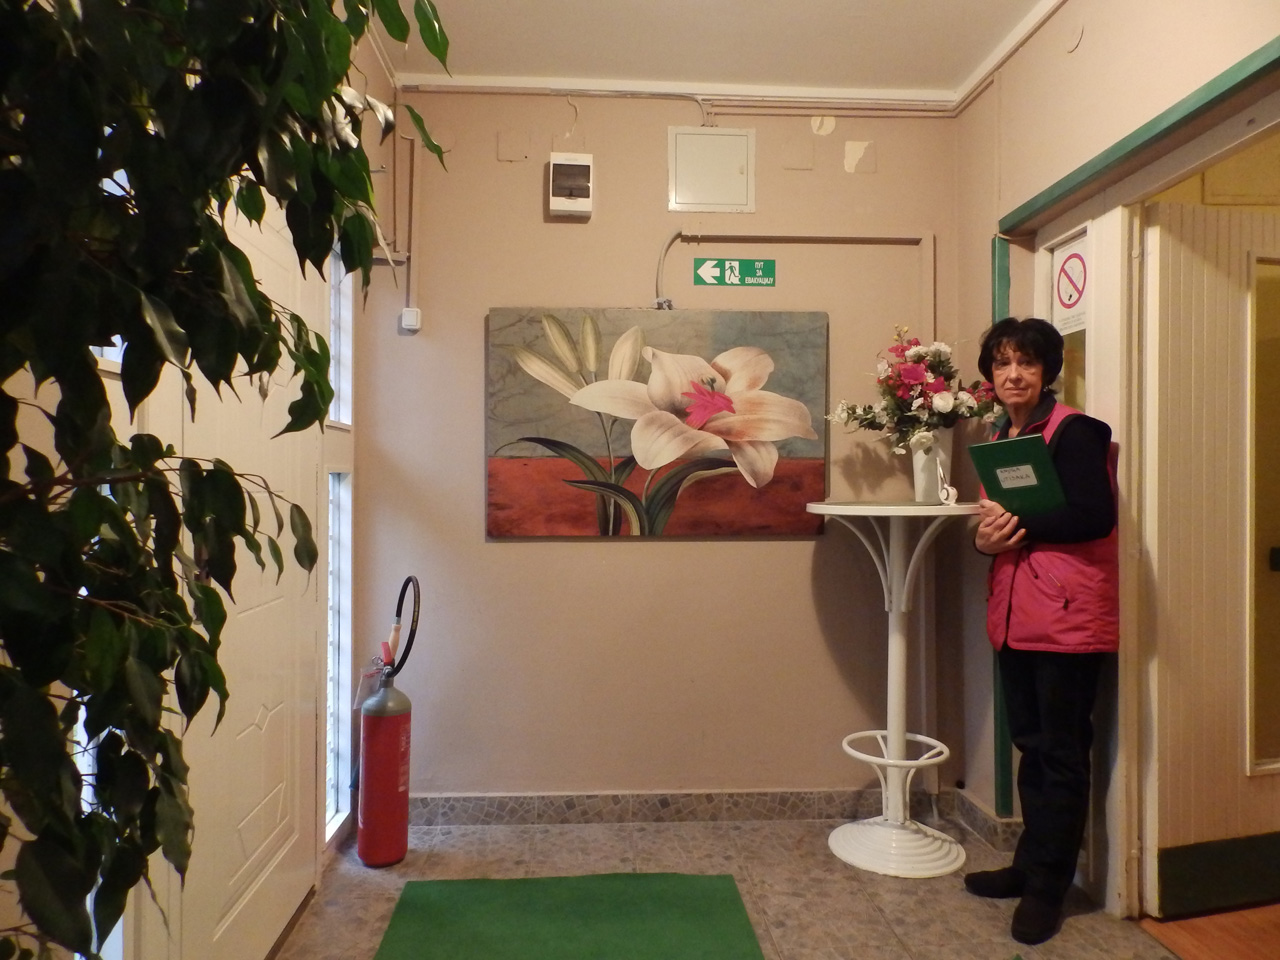 Photo 4 - HOME FOR OLD - ZARKOVACKI VRT Homes and care for the elderly Belgrade